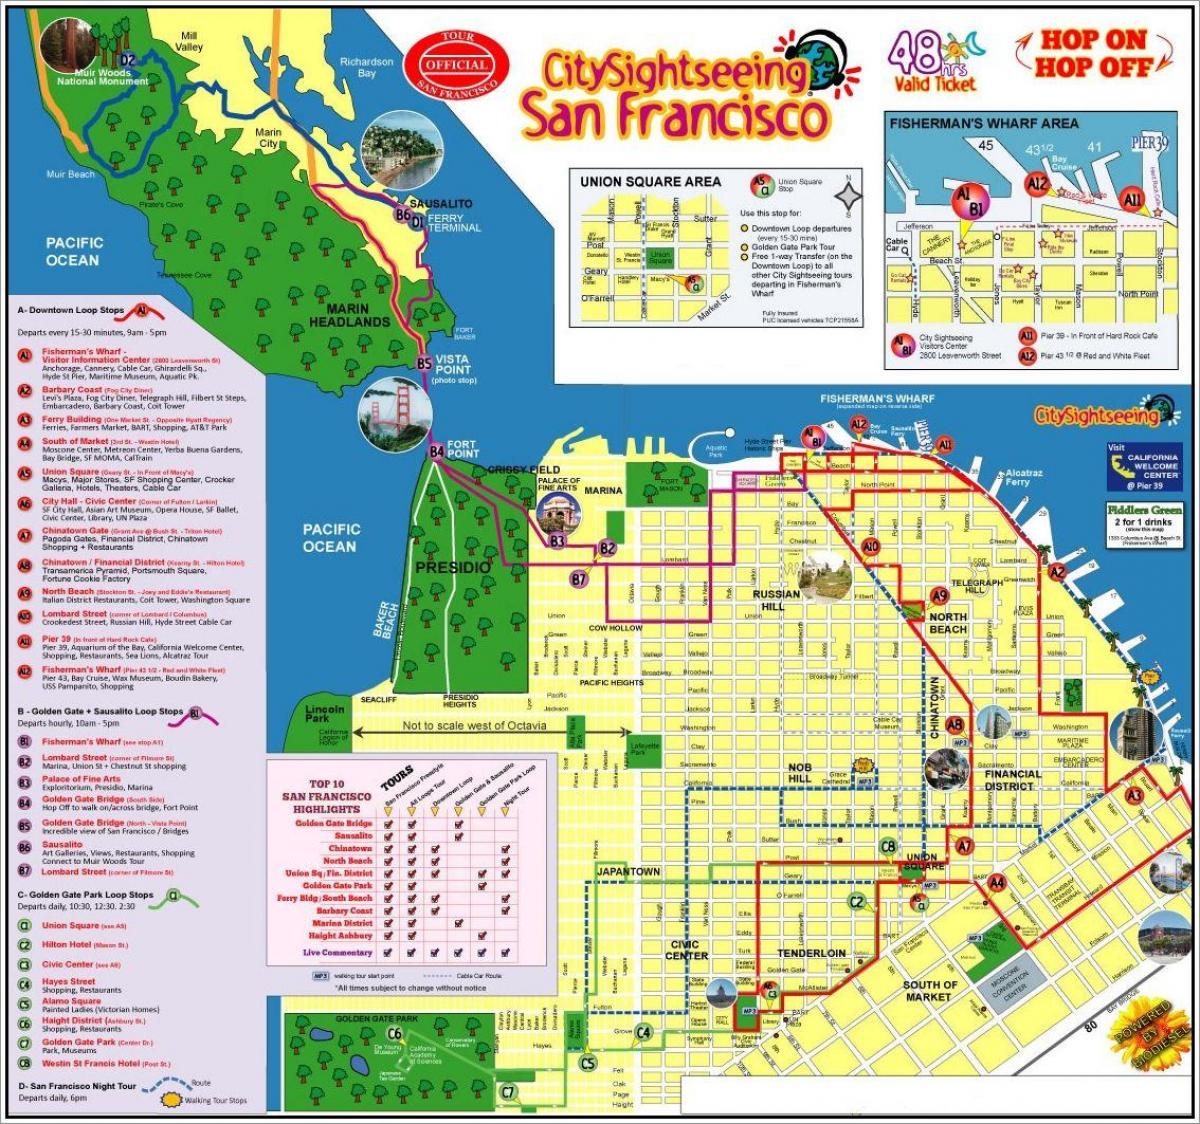 San Francisco hop on hop off bus tour map